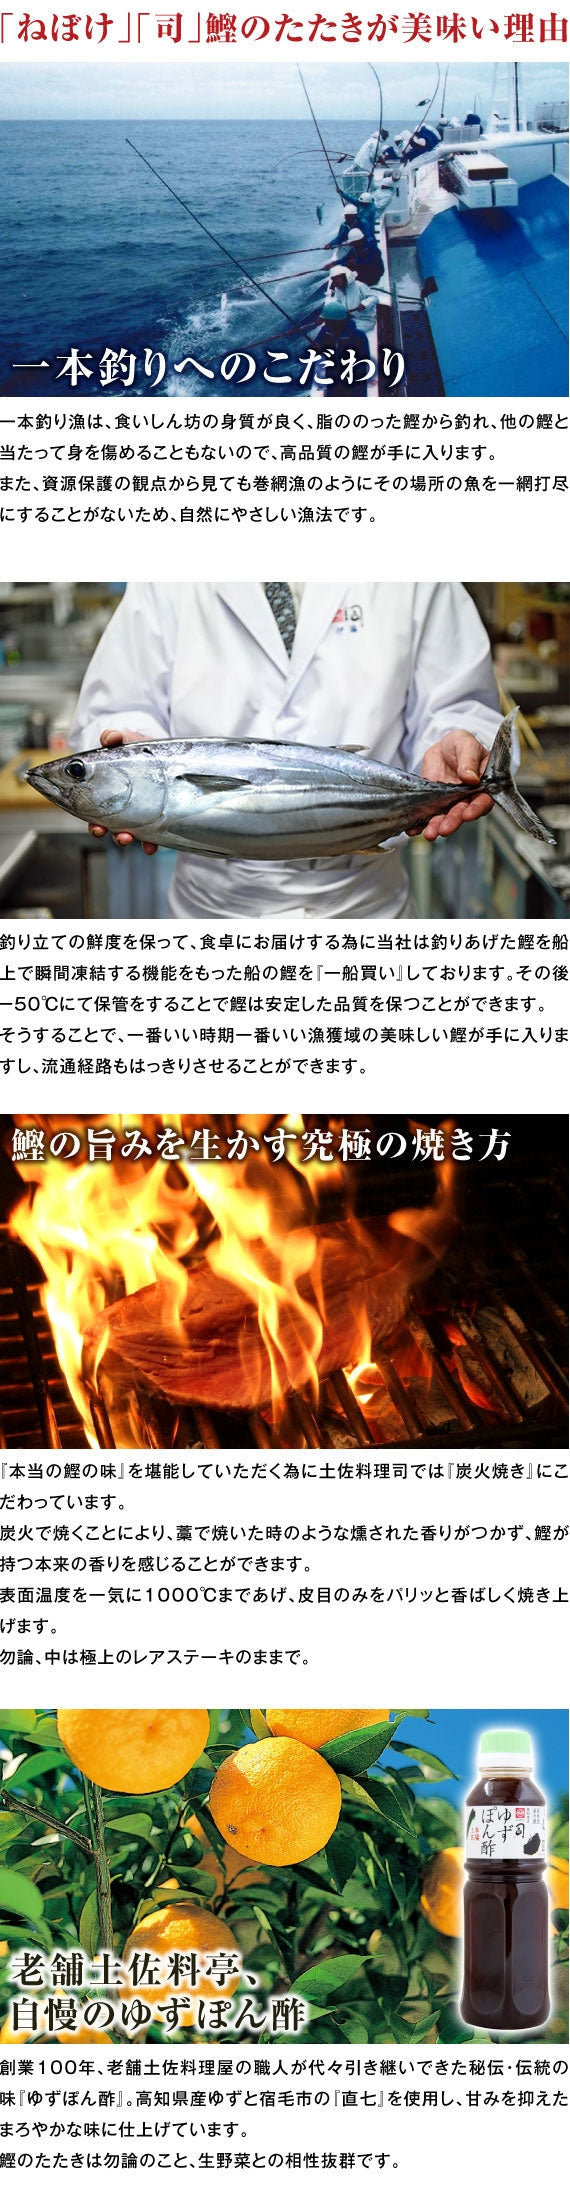 土佐料理 司「戻り鰹のたたき1本入り(３人前）」 (000171)【カニ・鮮魚・魚介類】